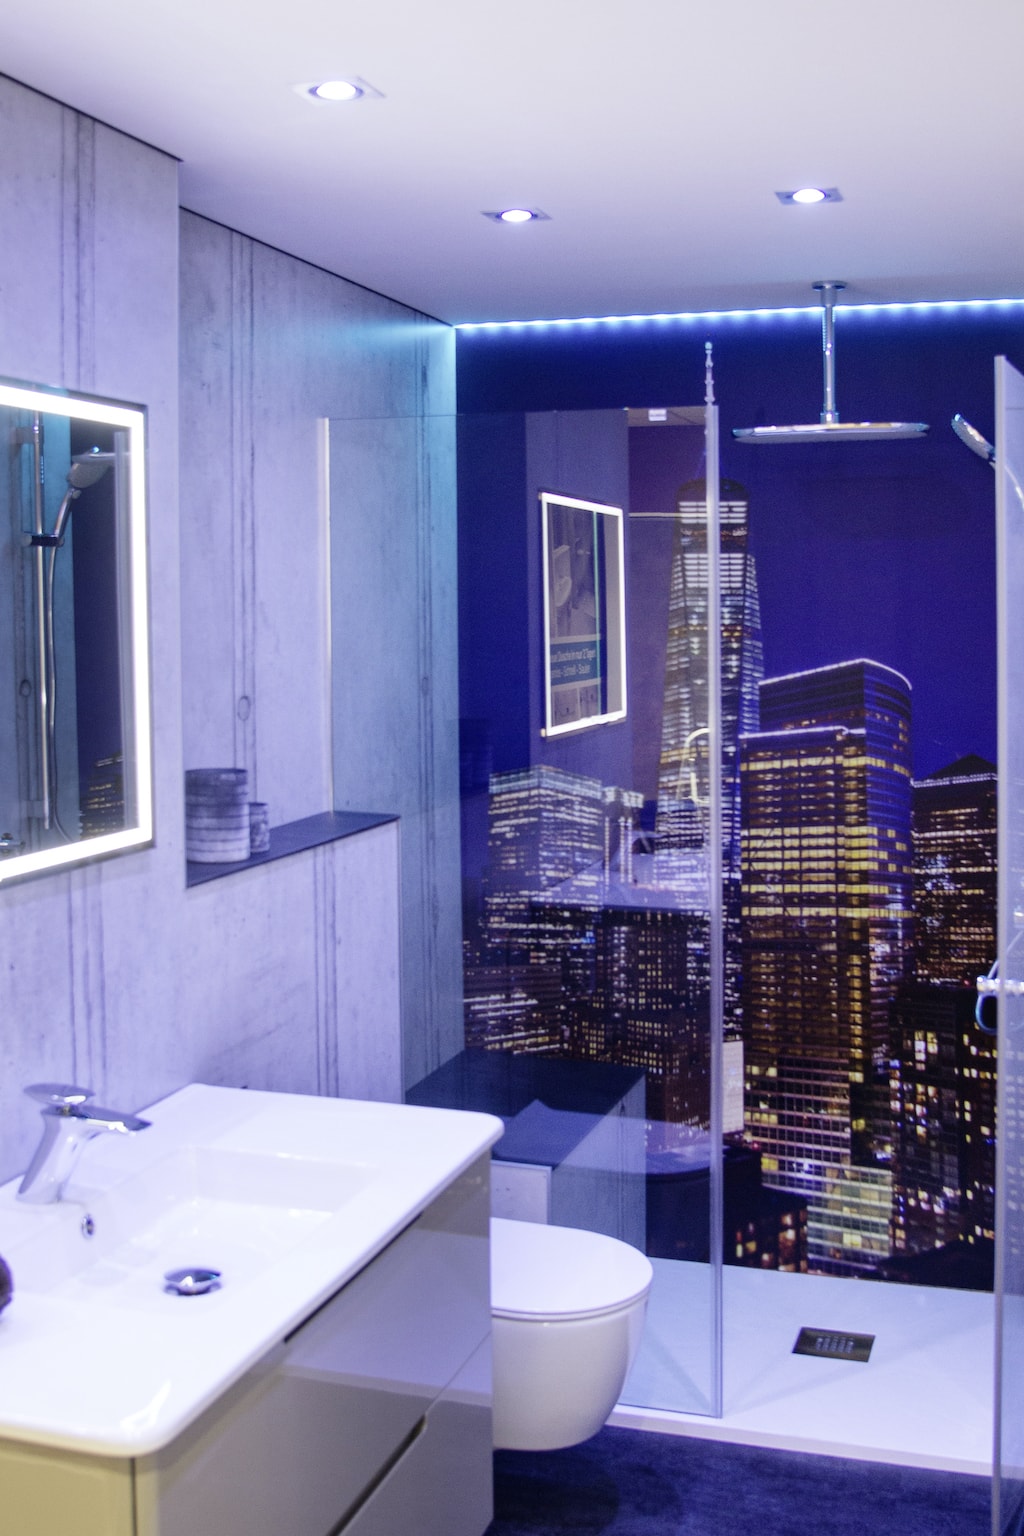 Badezimmer im blauen Neon Design